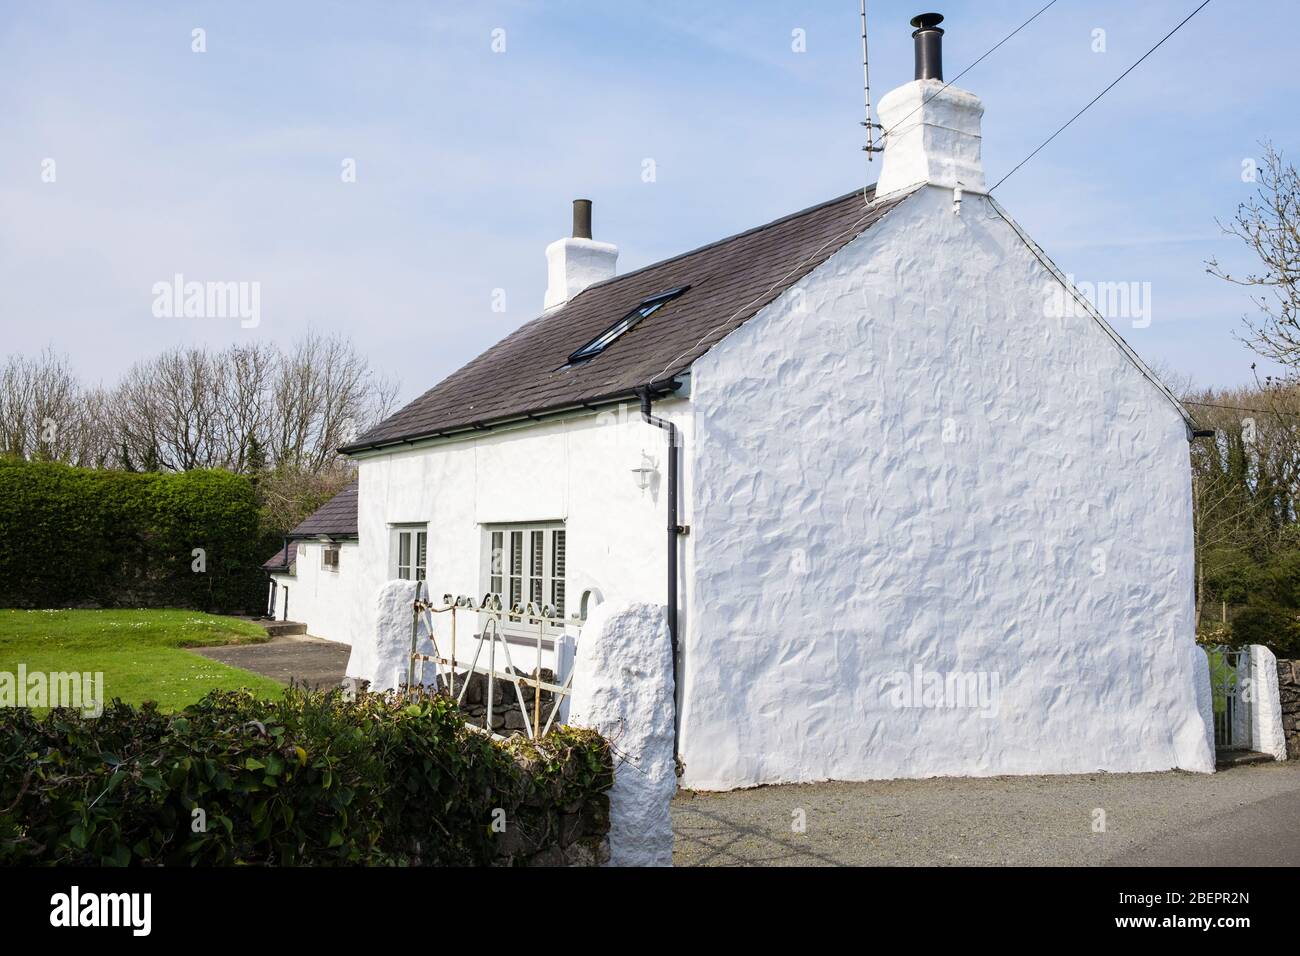 Casa de campo antigua encalada galesa con tejado tradicional de pizarra. Brynteg, Benllech, Isla de Anglesey, Gales, Reino Unido, Gran Bretaña Foto de stock